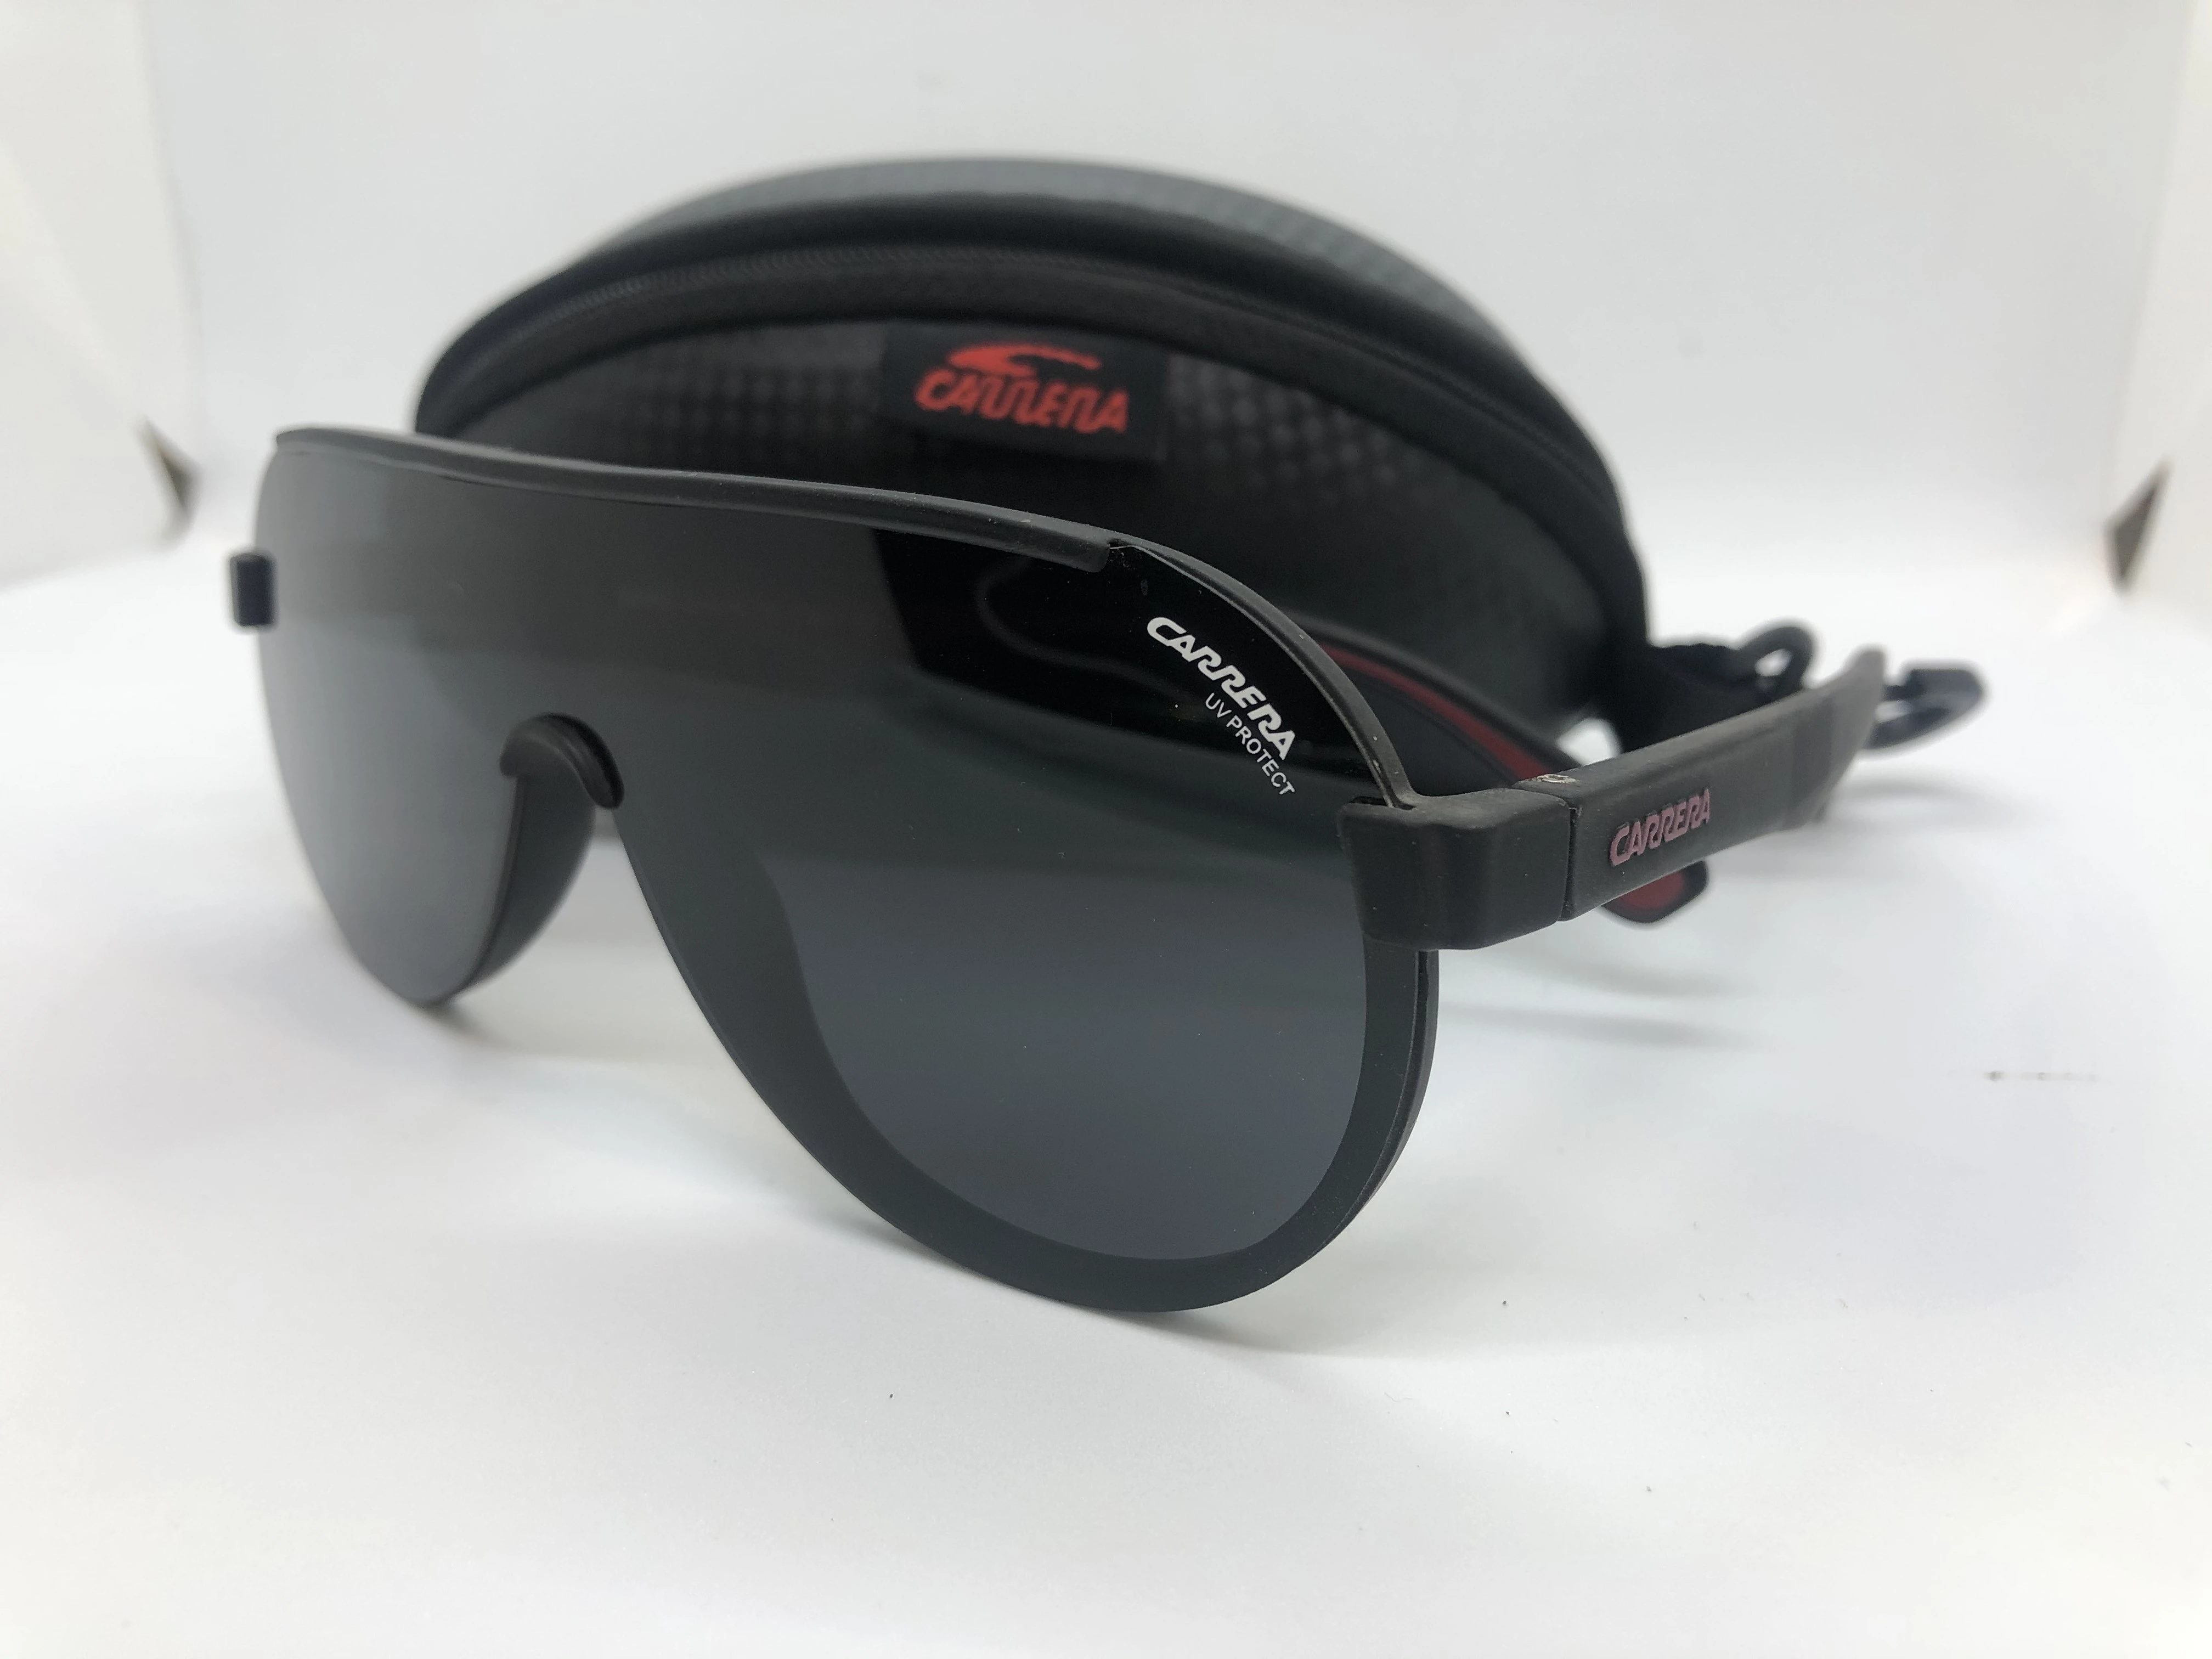 نظارة شمسية - سوداء من كاريرا - بإطار اسود بولي كربونات - وعدسات سوداء - للرجال